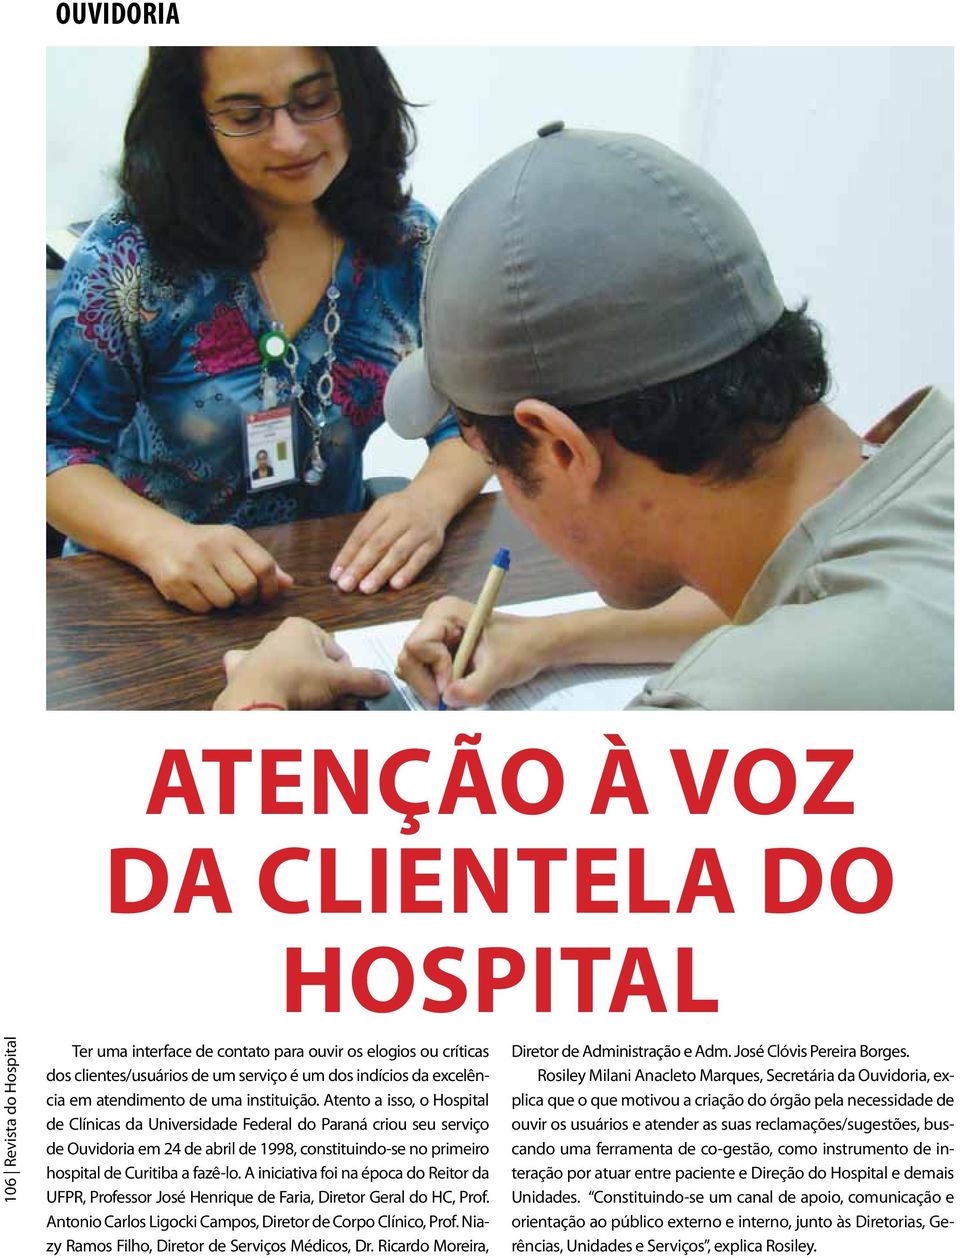 Atento a isso, o Hospital de Clínicas da Universidade Federal do Paraná criou seu serviço de Ouvidoria em 24 de abril de 1998, constituindo-se no primeiro hospital de Curitiba a fazê-lo.